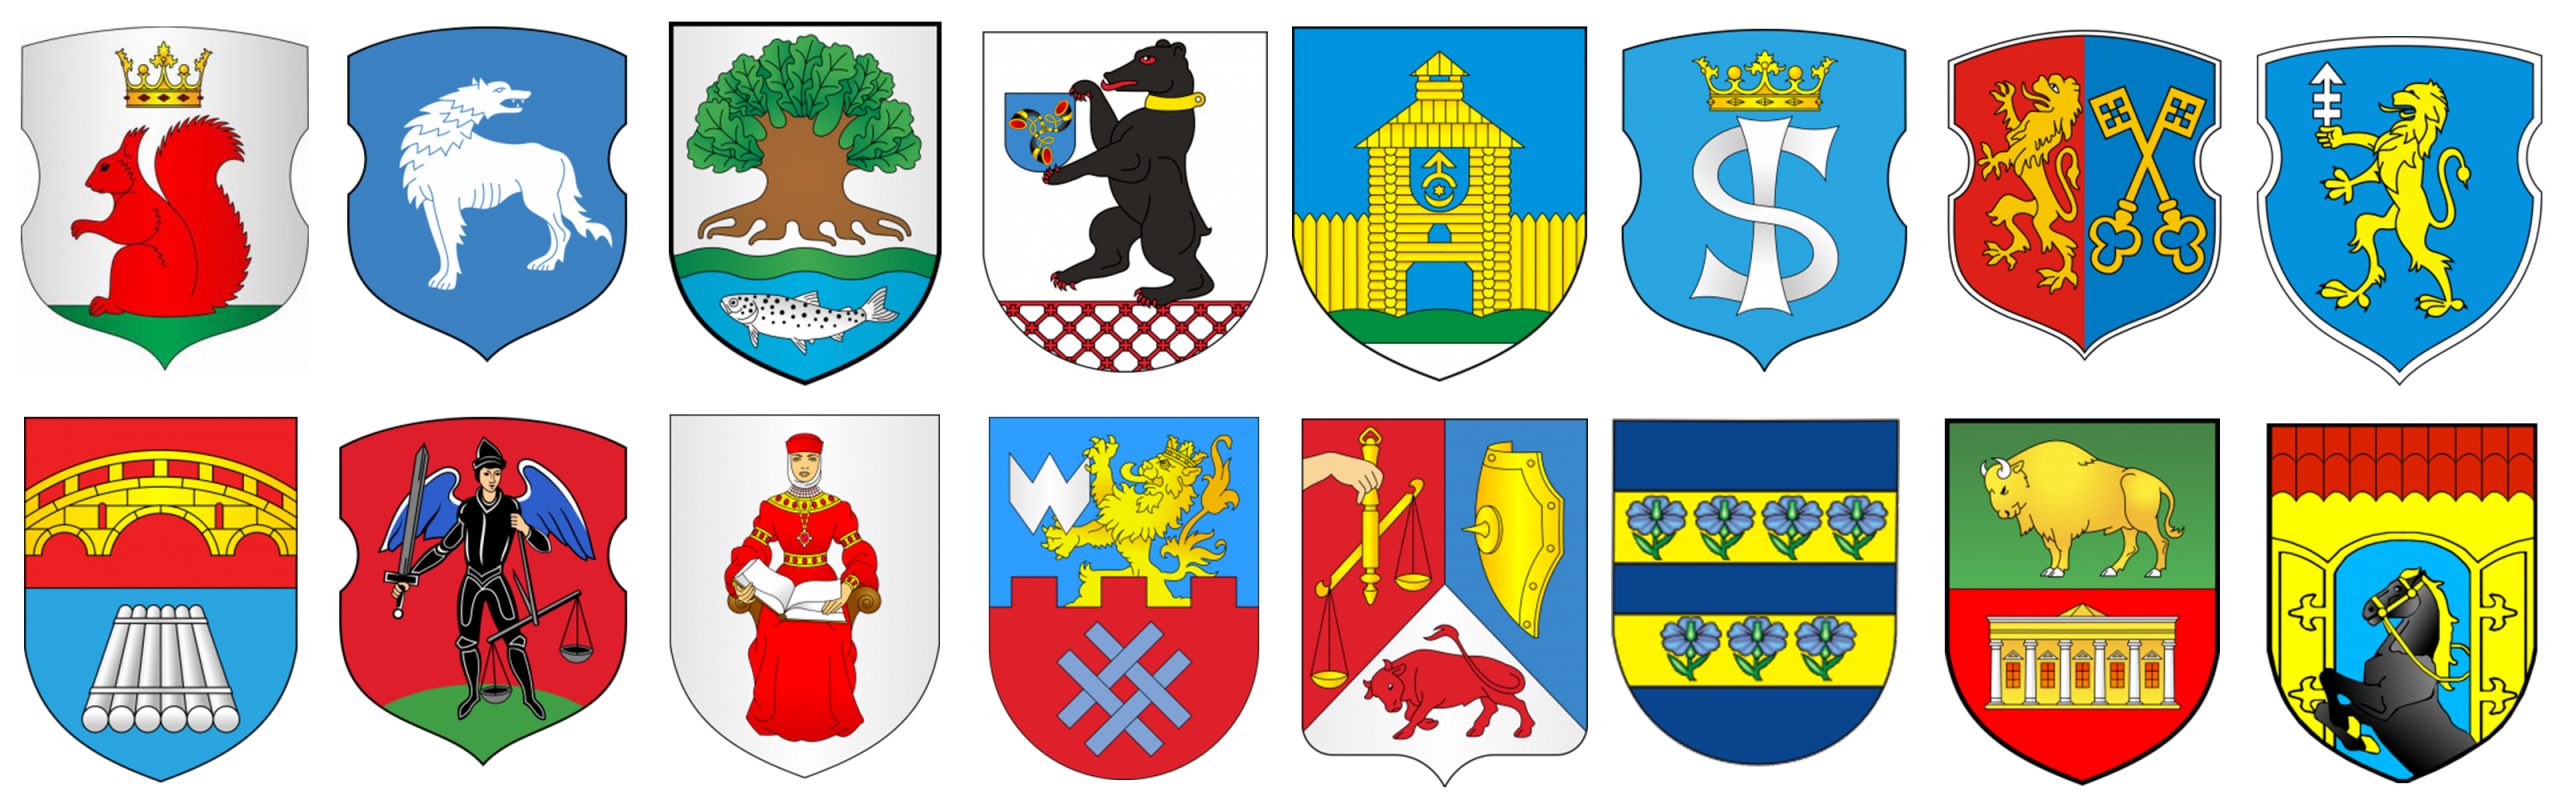 гербы городов гроненской области